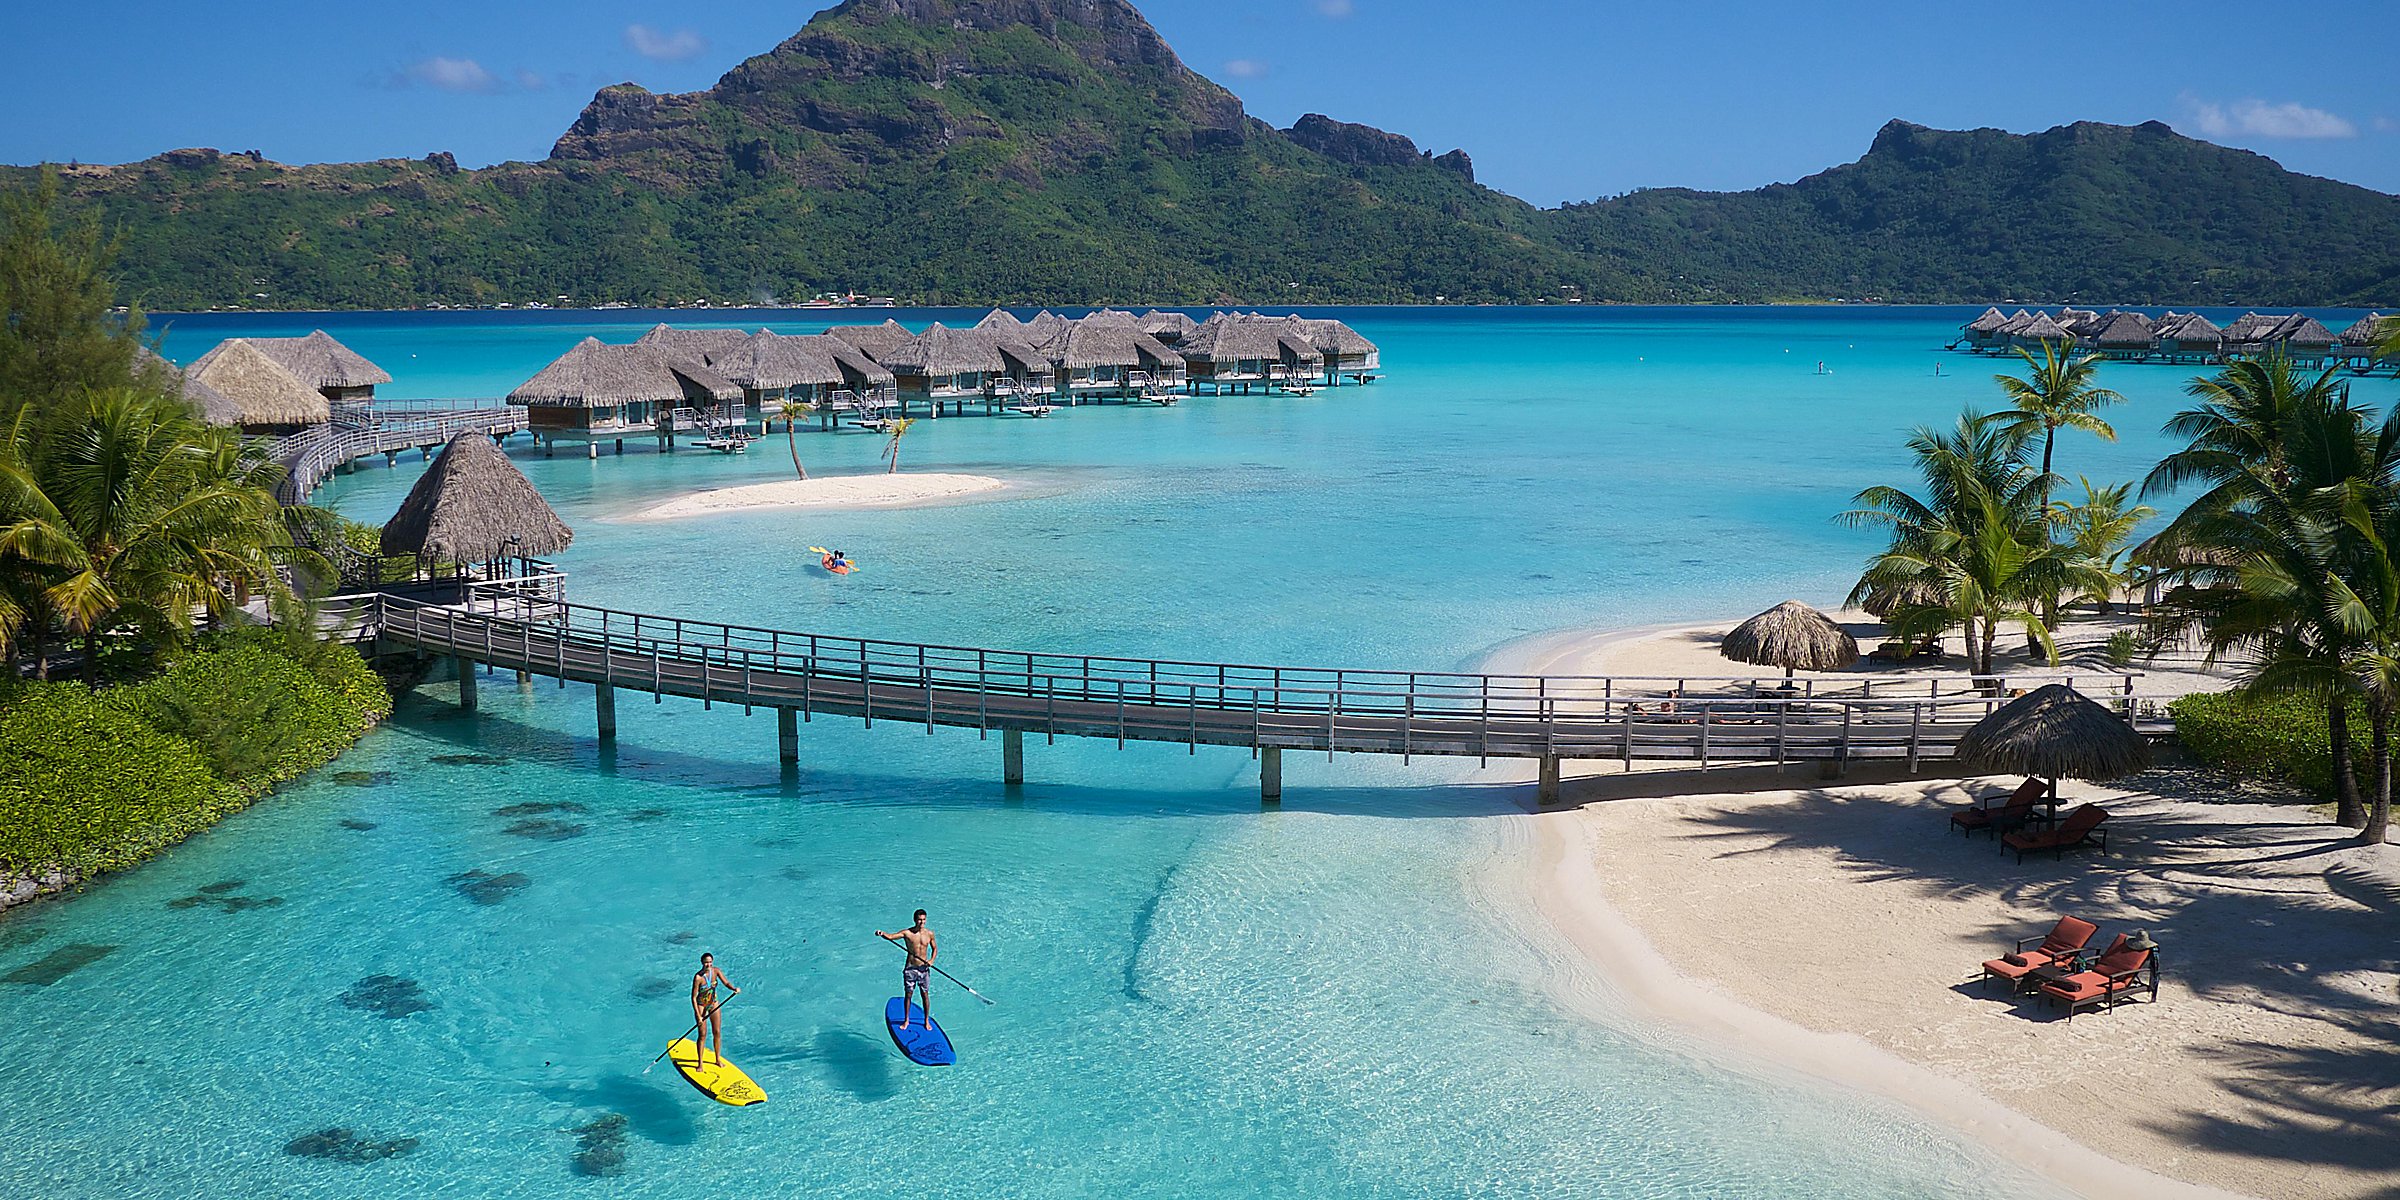 Pacotes de viagem para Bora Bora em promoção!